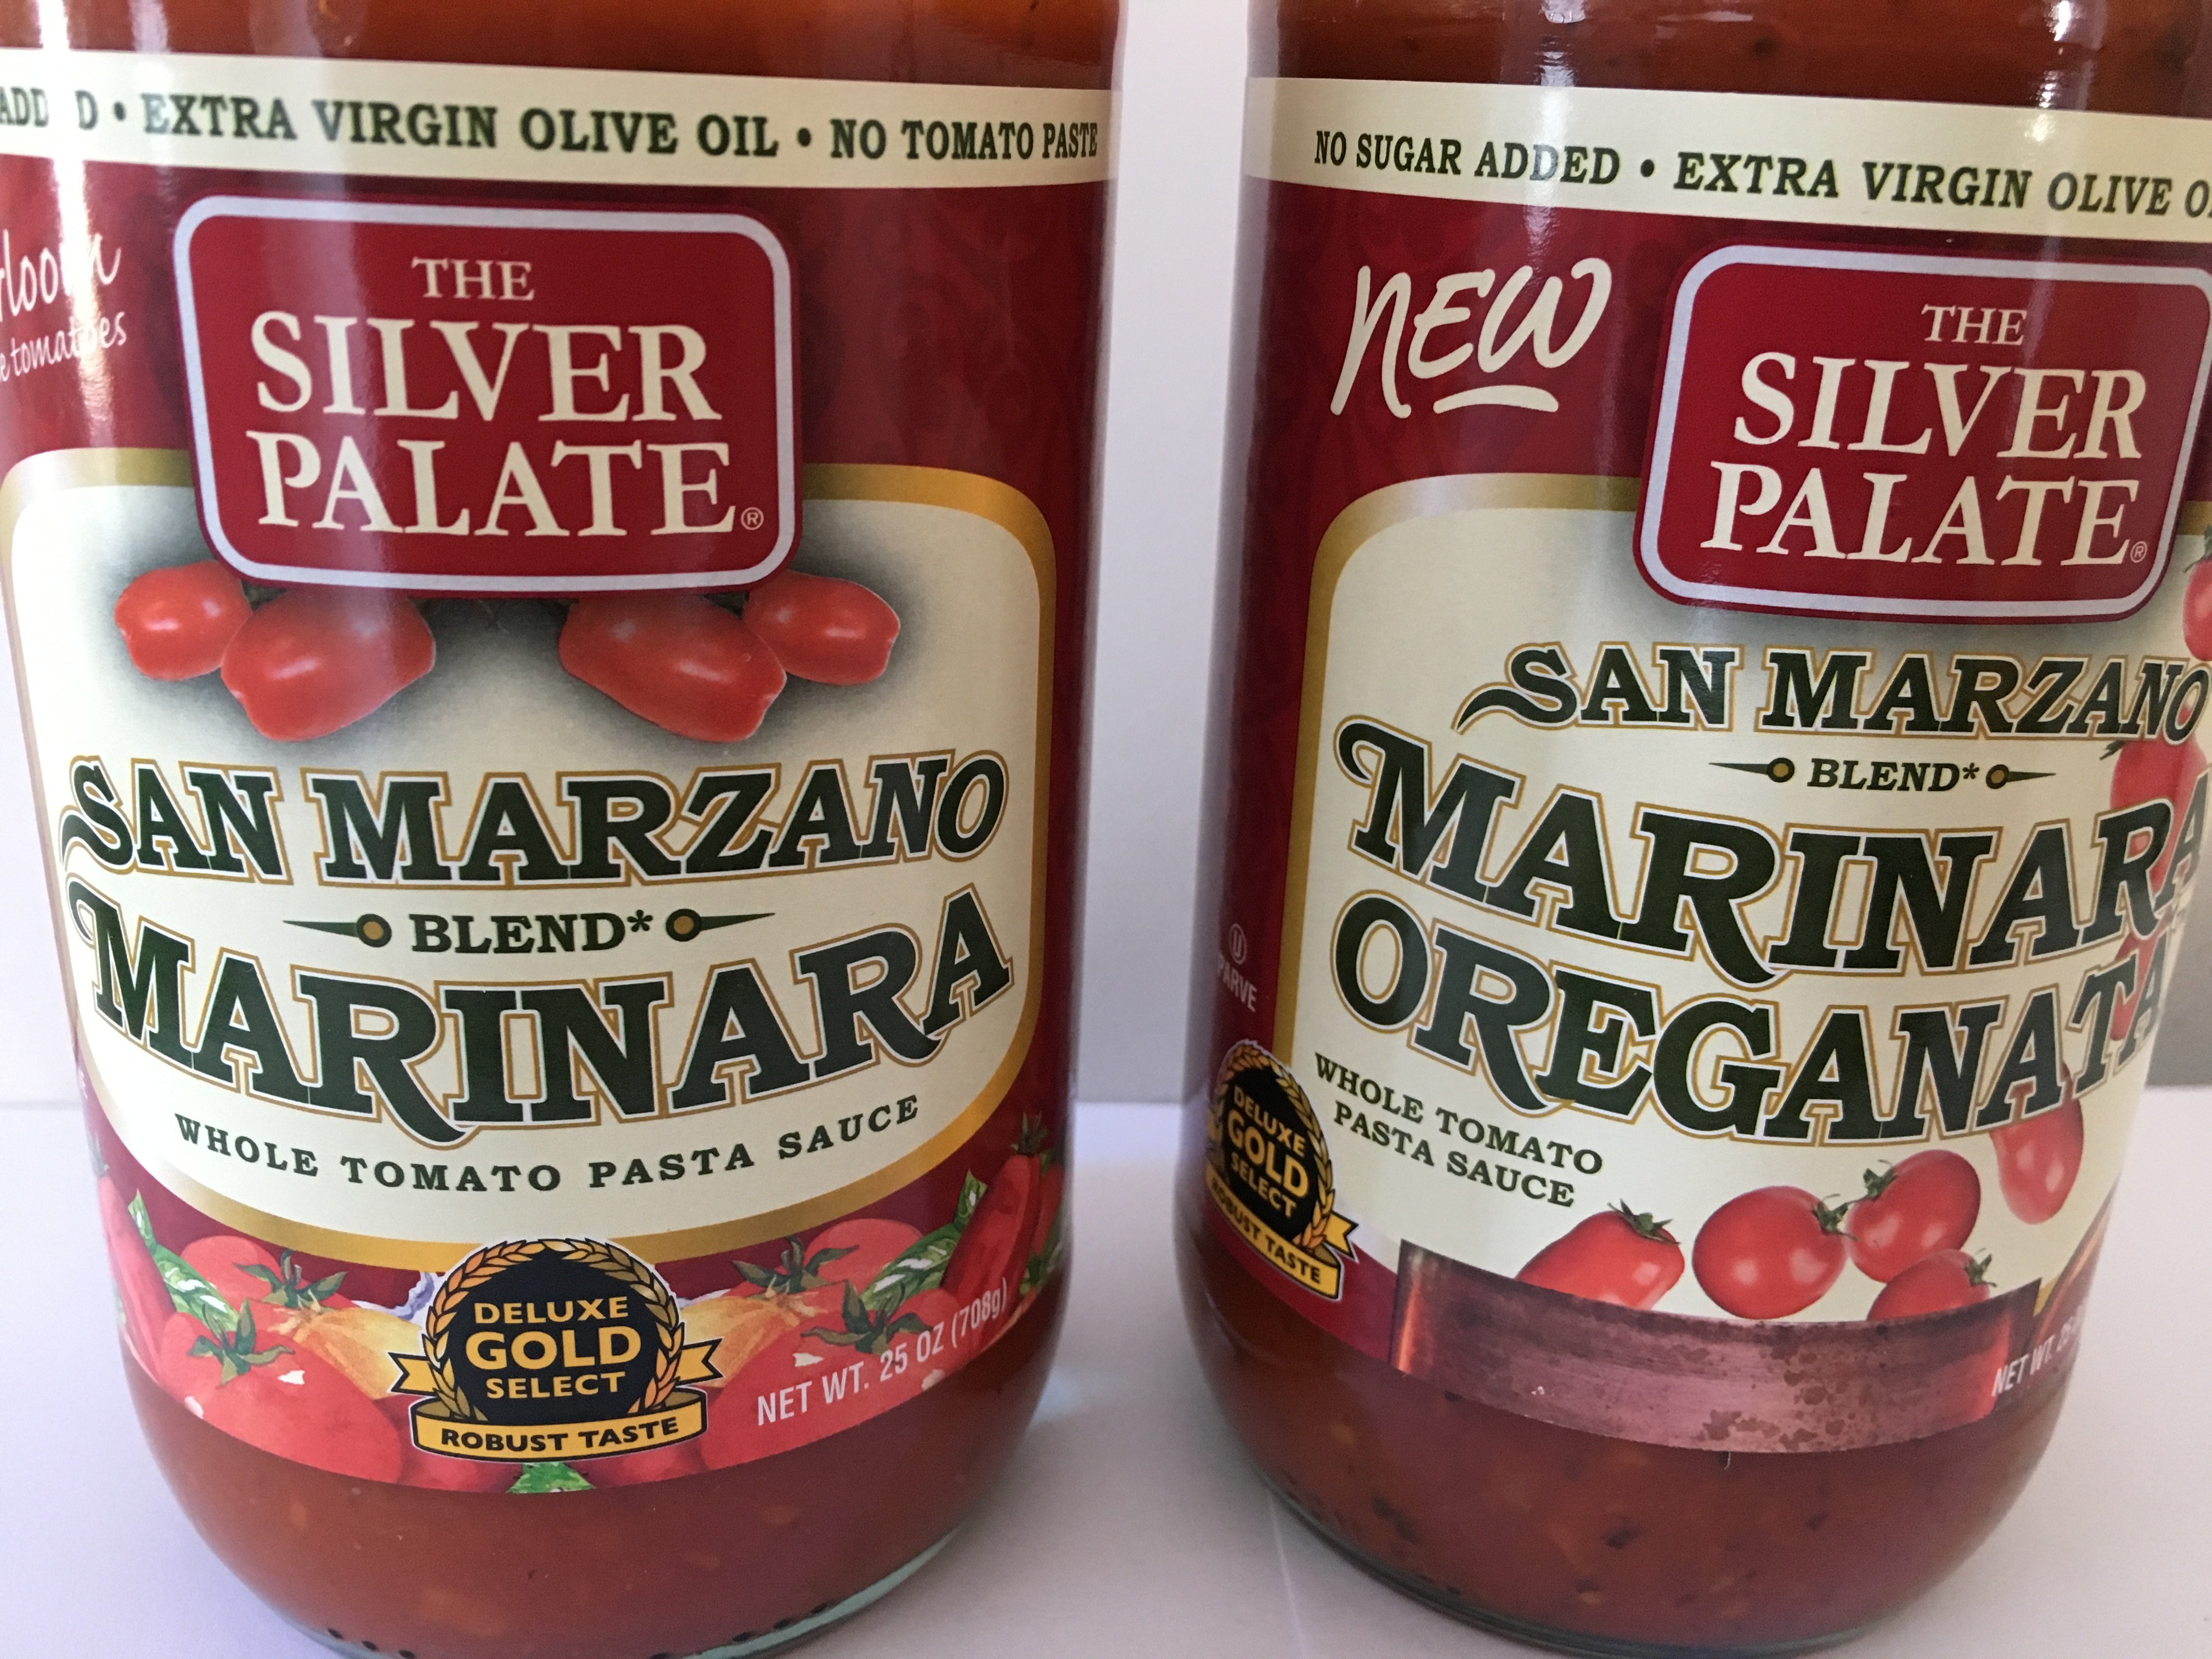 Colavita Organic Marinara Sauce, 25 Ounce 